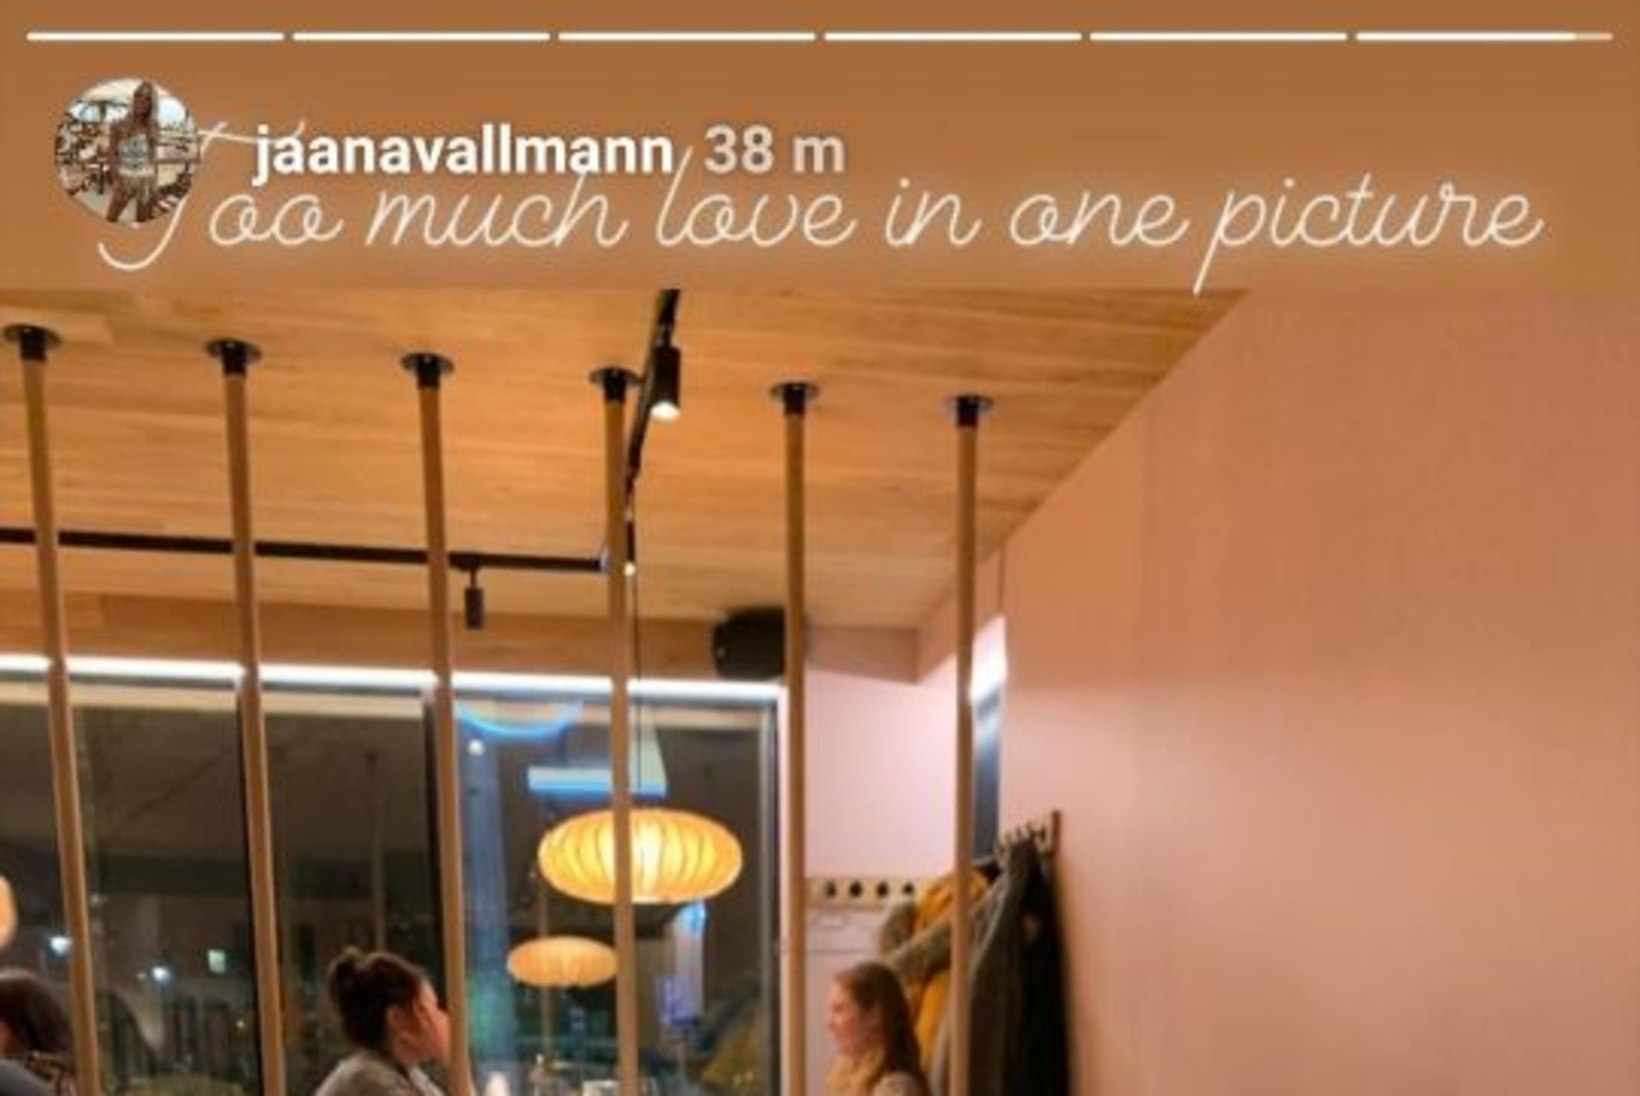 FOTOD | Hispaania ralliäss lõbutses koos Eesti neiuga Tallinna restoranis